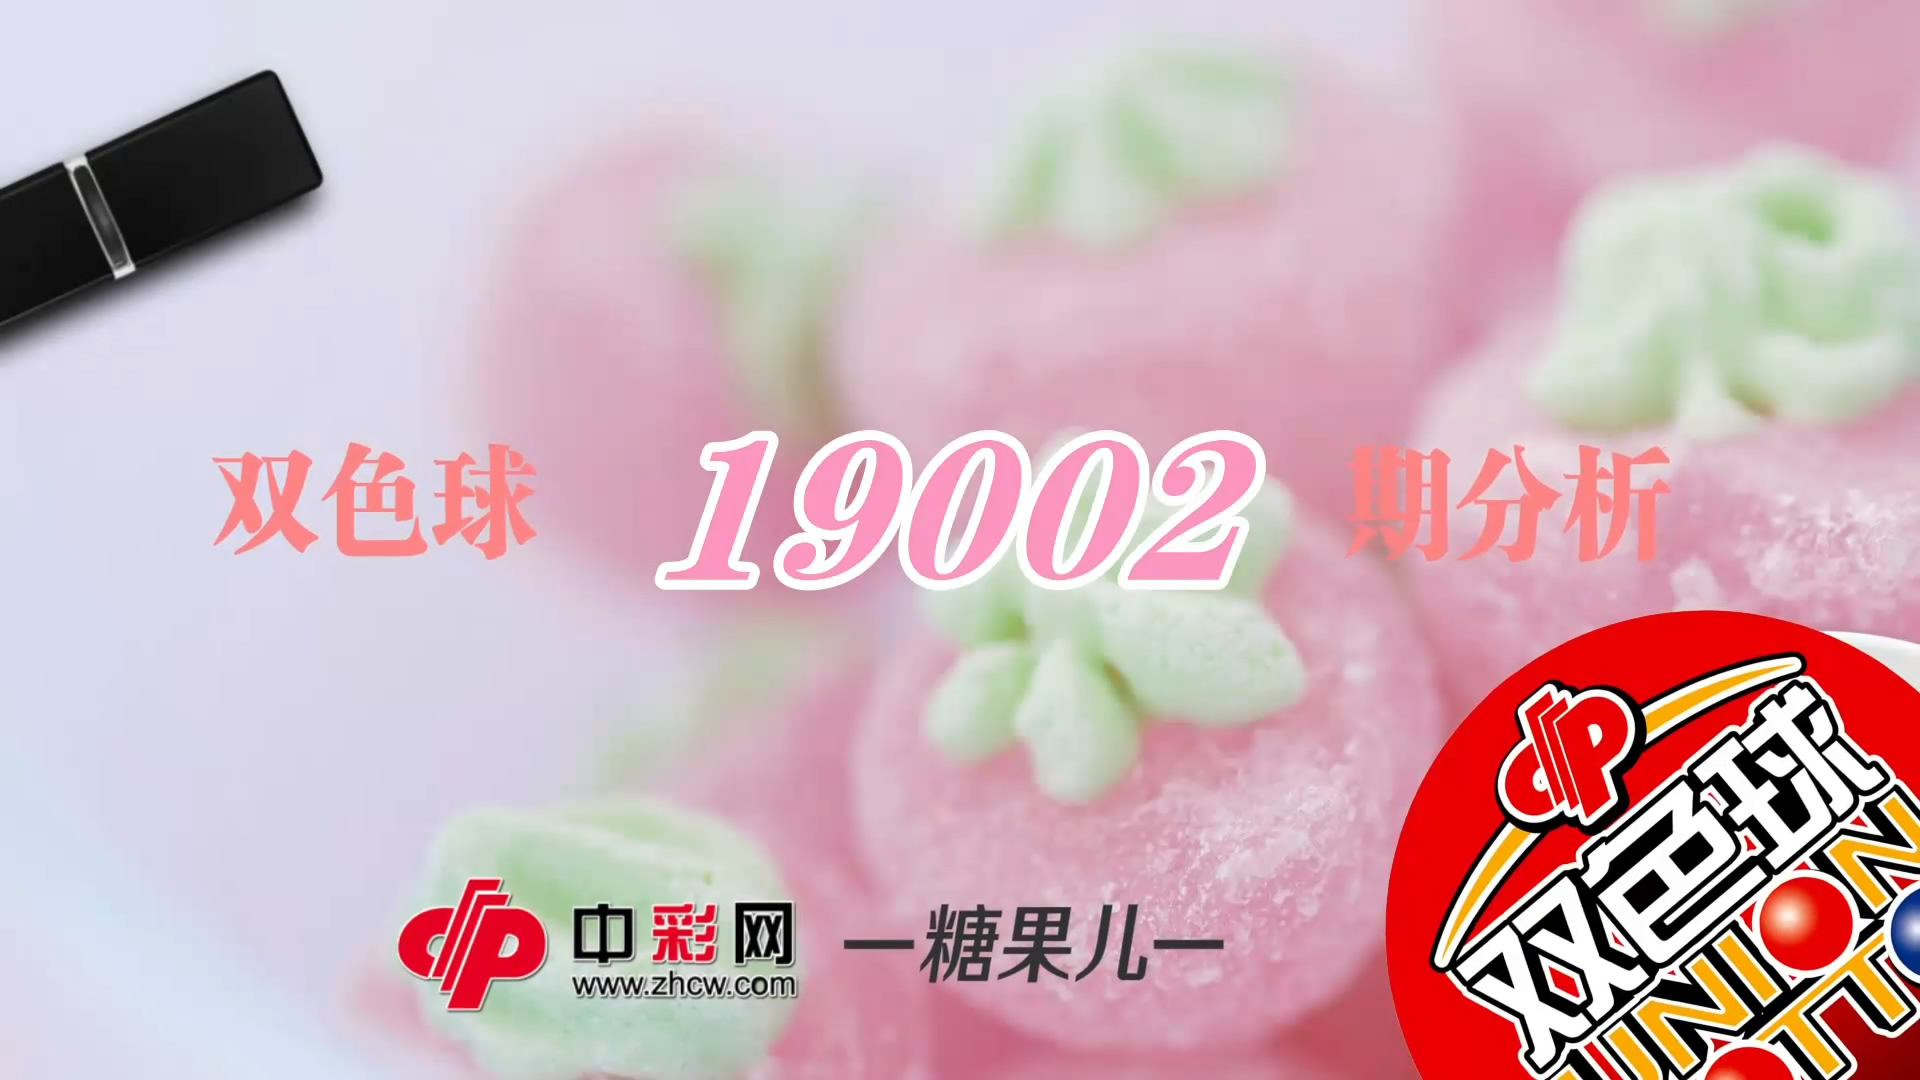 【中彩视频】糖果儿双色球第19002期